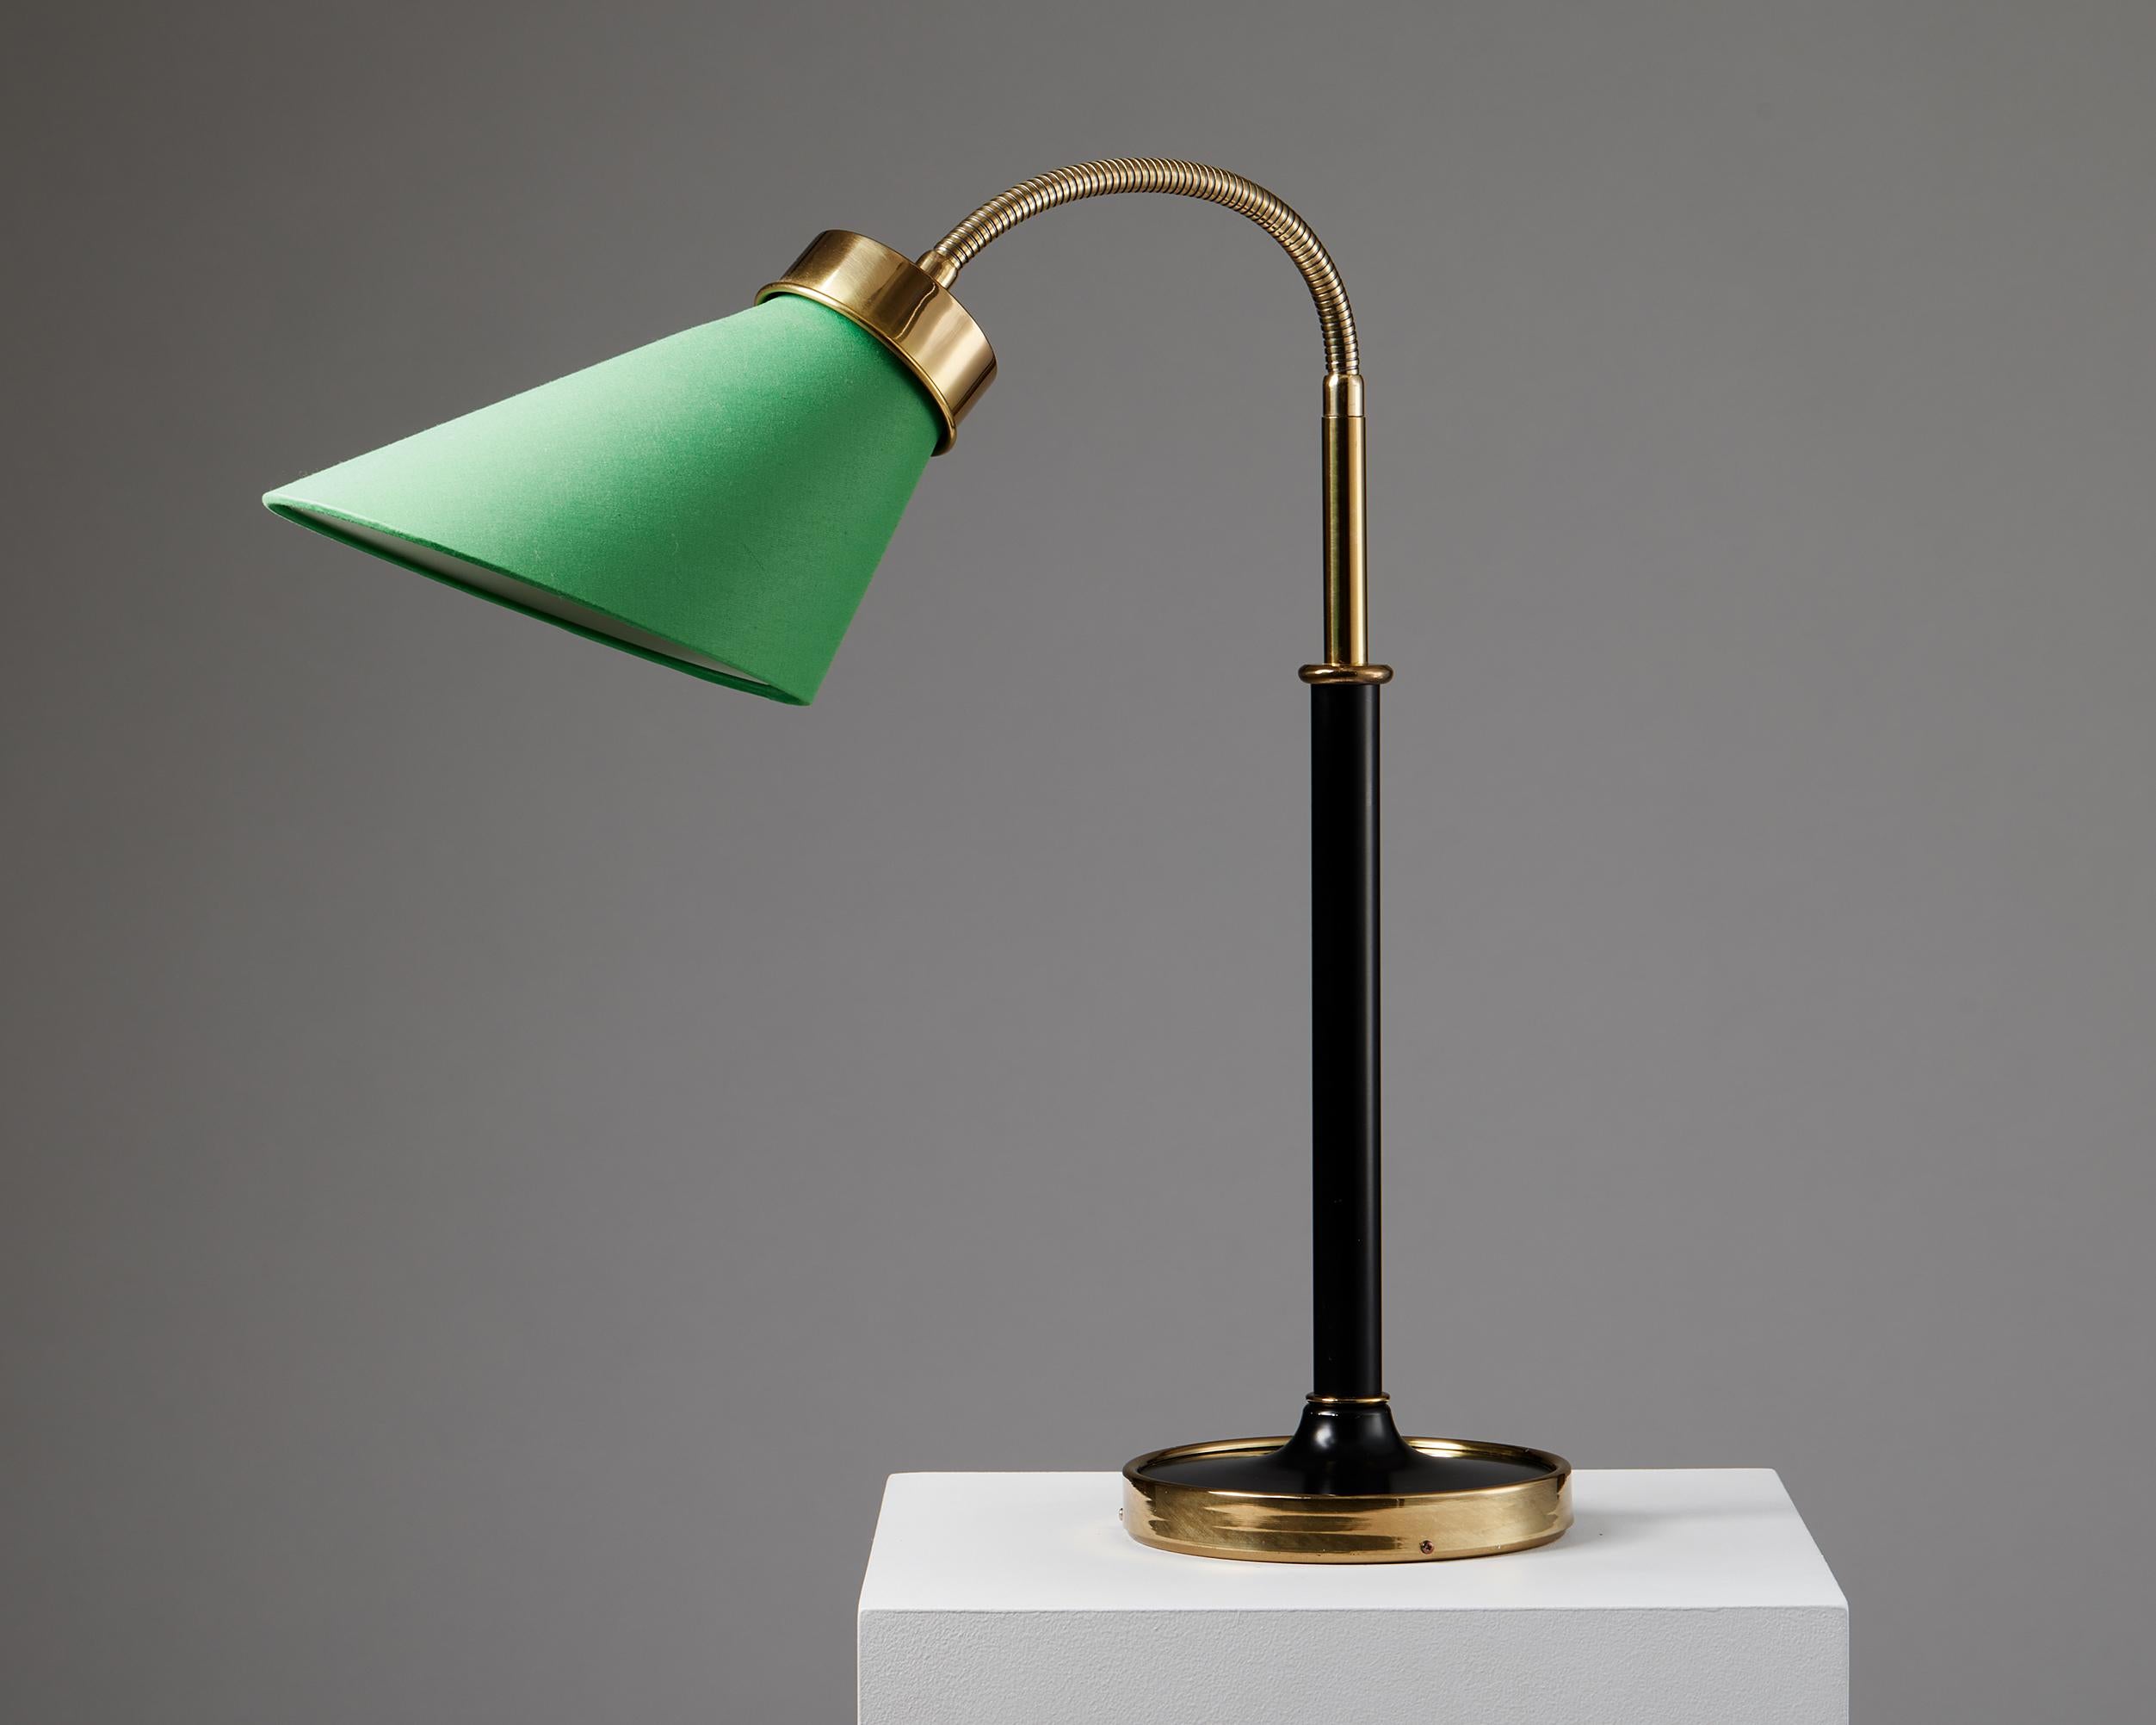 Lampe de table modèle 2434 conçue par Josef Frank pour Svenskt Tenn,
Suède, 1939.
Laiton poli et laqué avec abat-jour en tissu.

Mesures : H : 58 cm / 1' 10 1/2